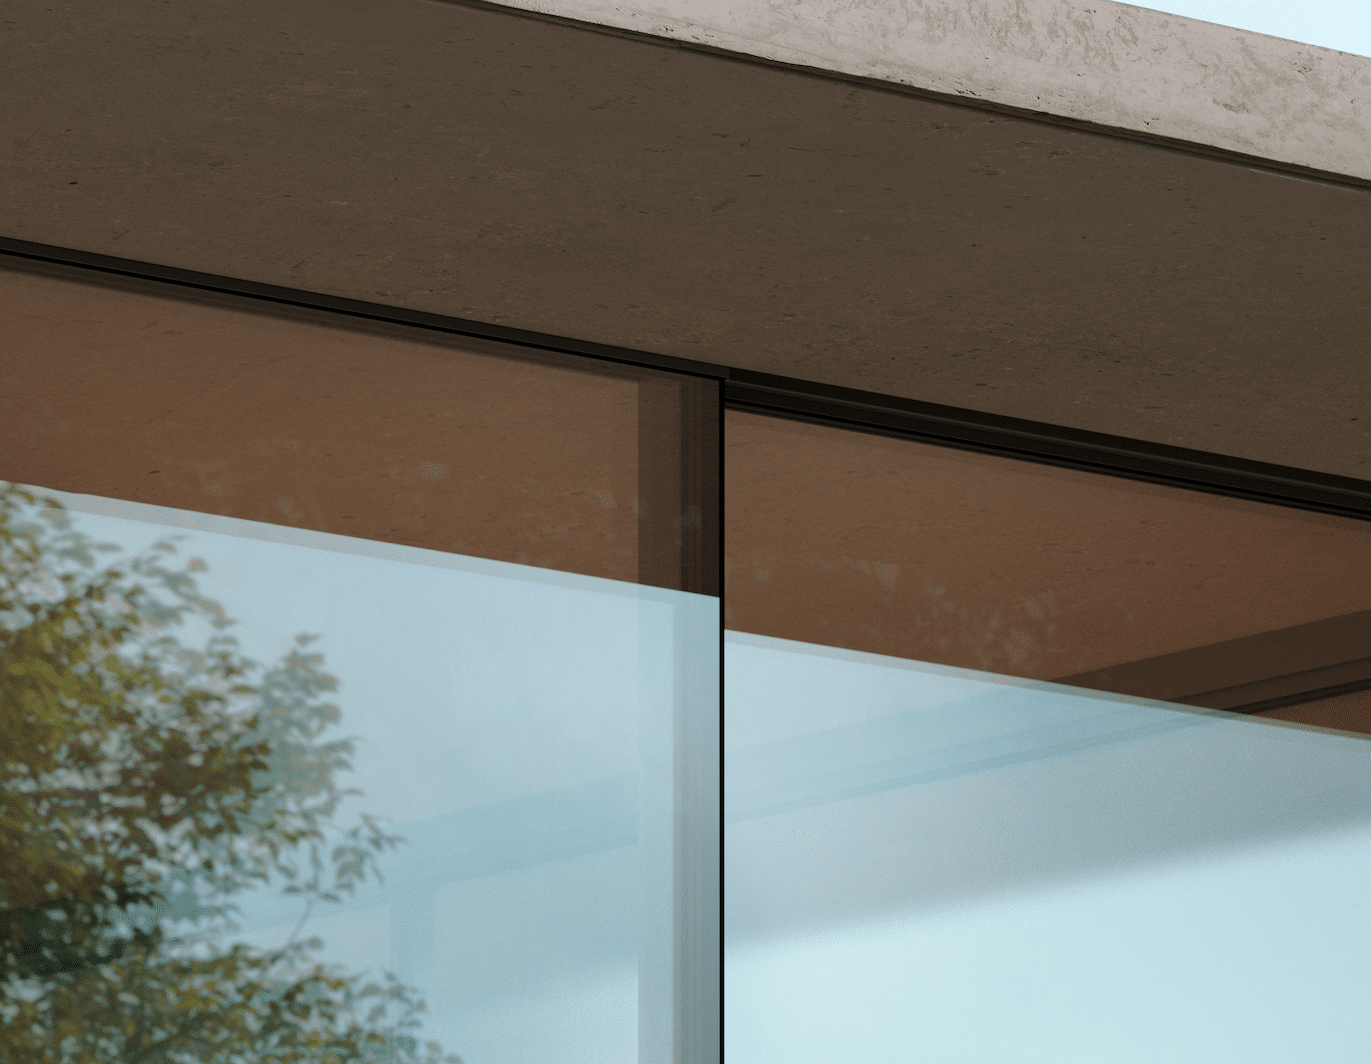 Solarlux ist es gelungen, die Profilansichten des neuen Schiebefensters umlaufend zu minimieren. Im senkrechten Stulp-Bereich sind sie nur 2 mm breit, die Ansichtshöhen der waagrechten Profile betragen ebenfalls nur noch schmale 15 mm.